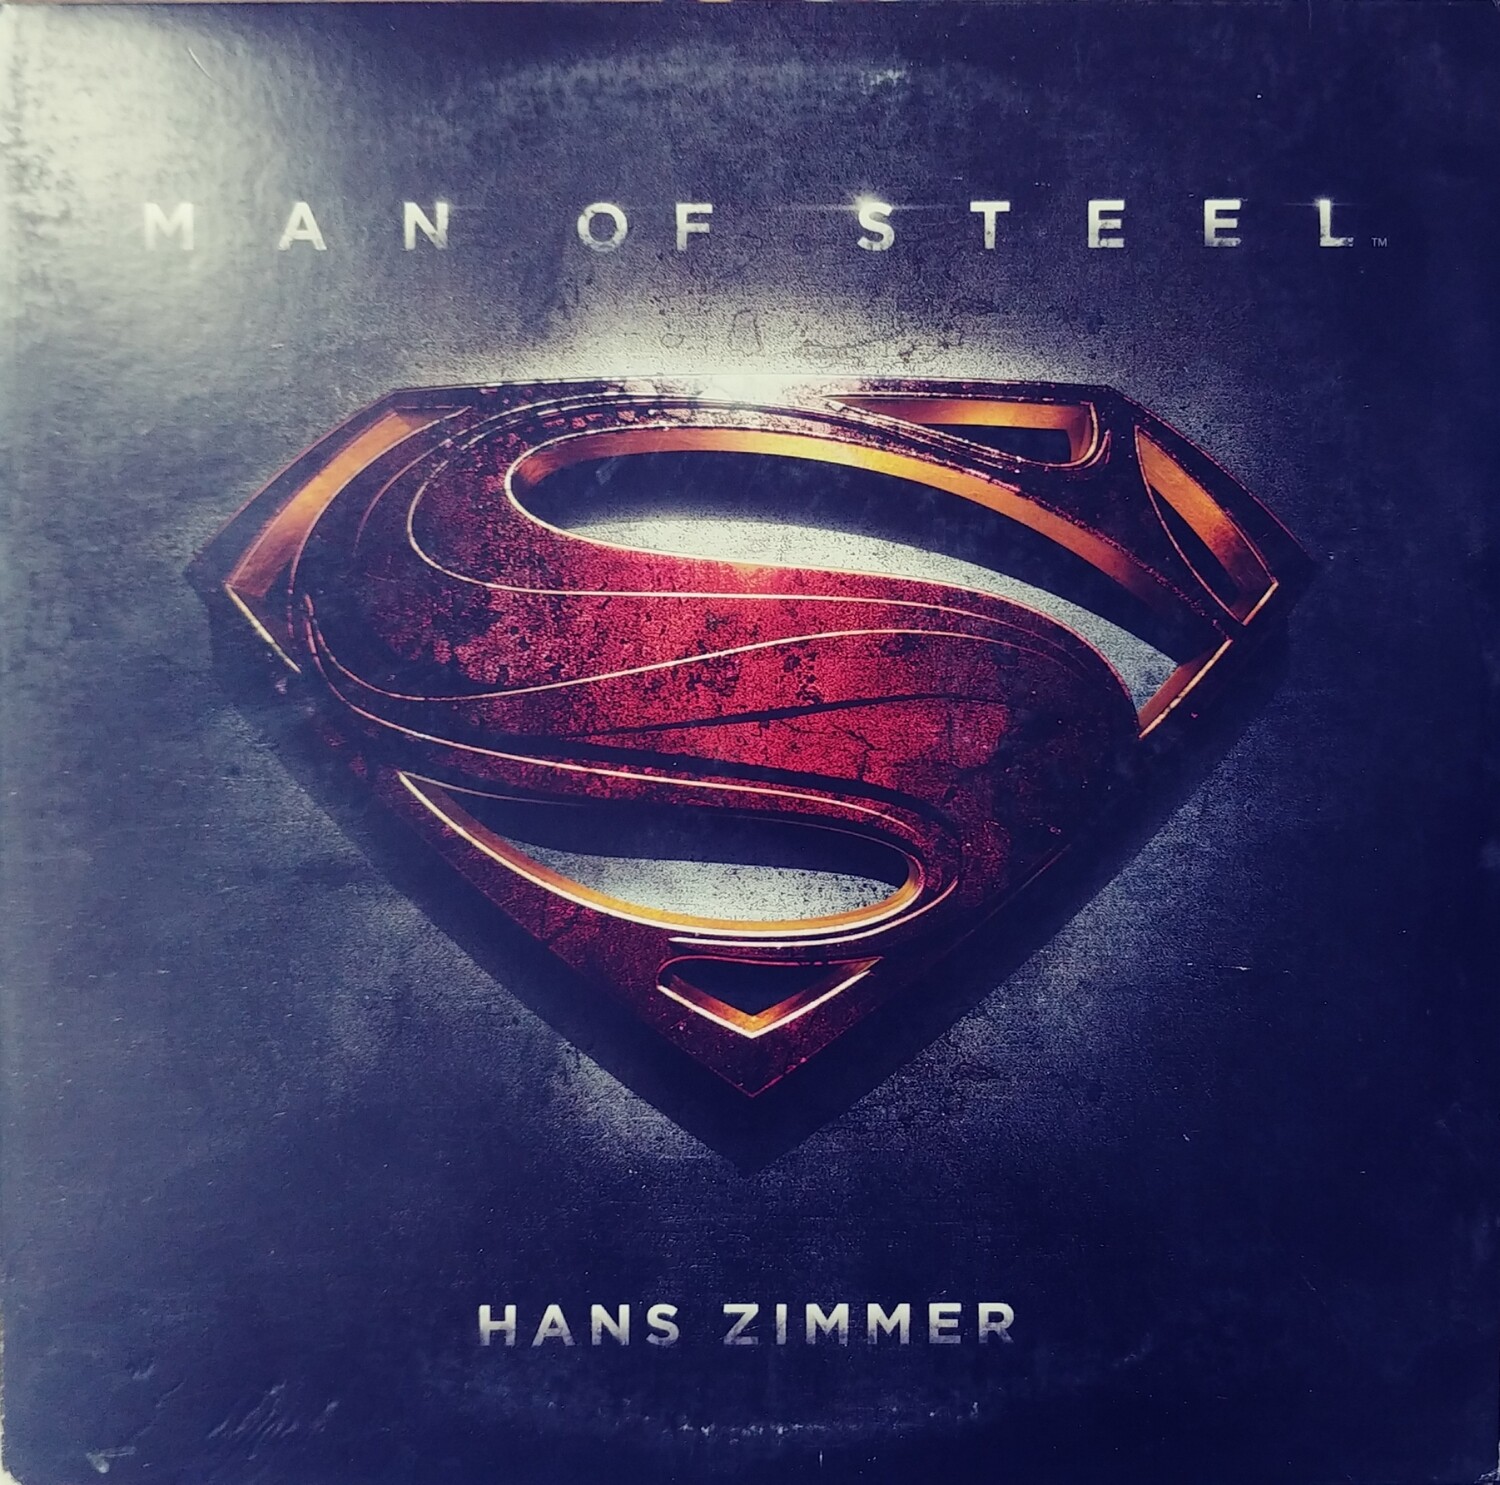 Hans Zimmer - Man of Steel